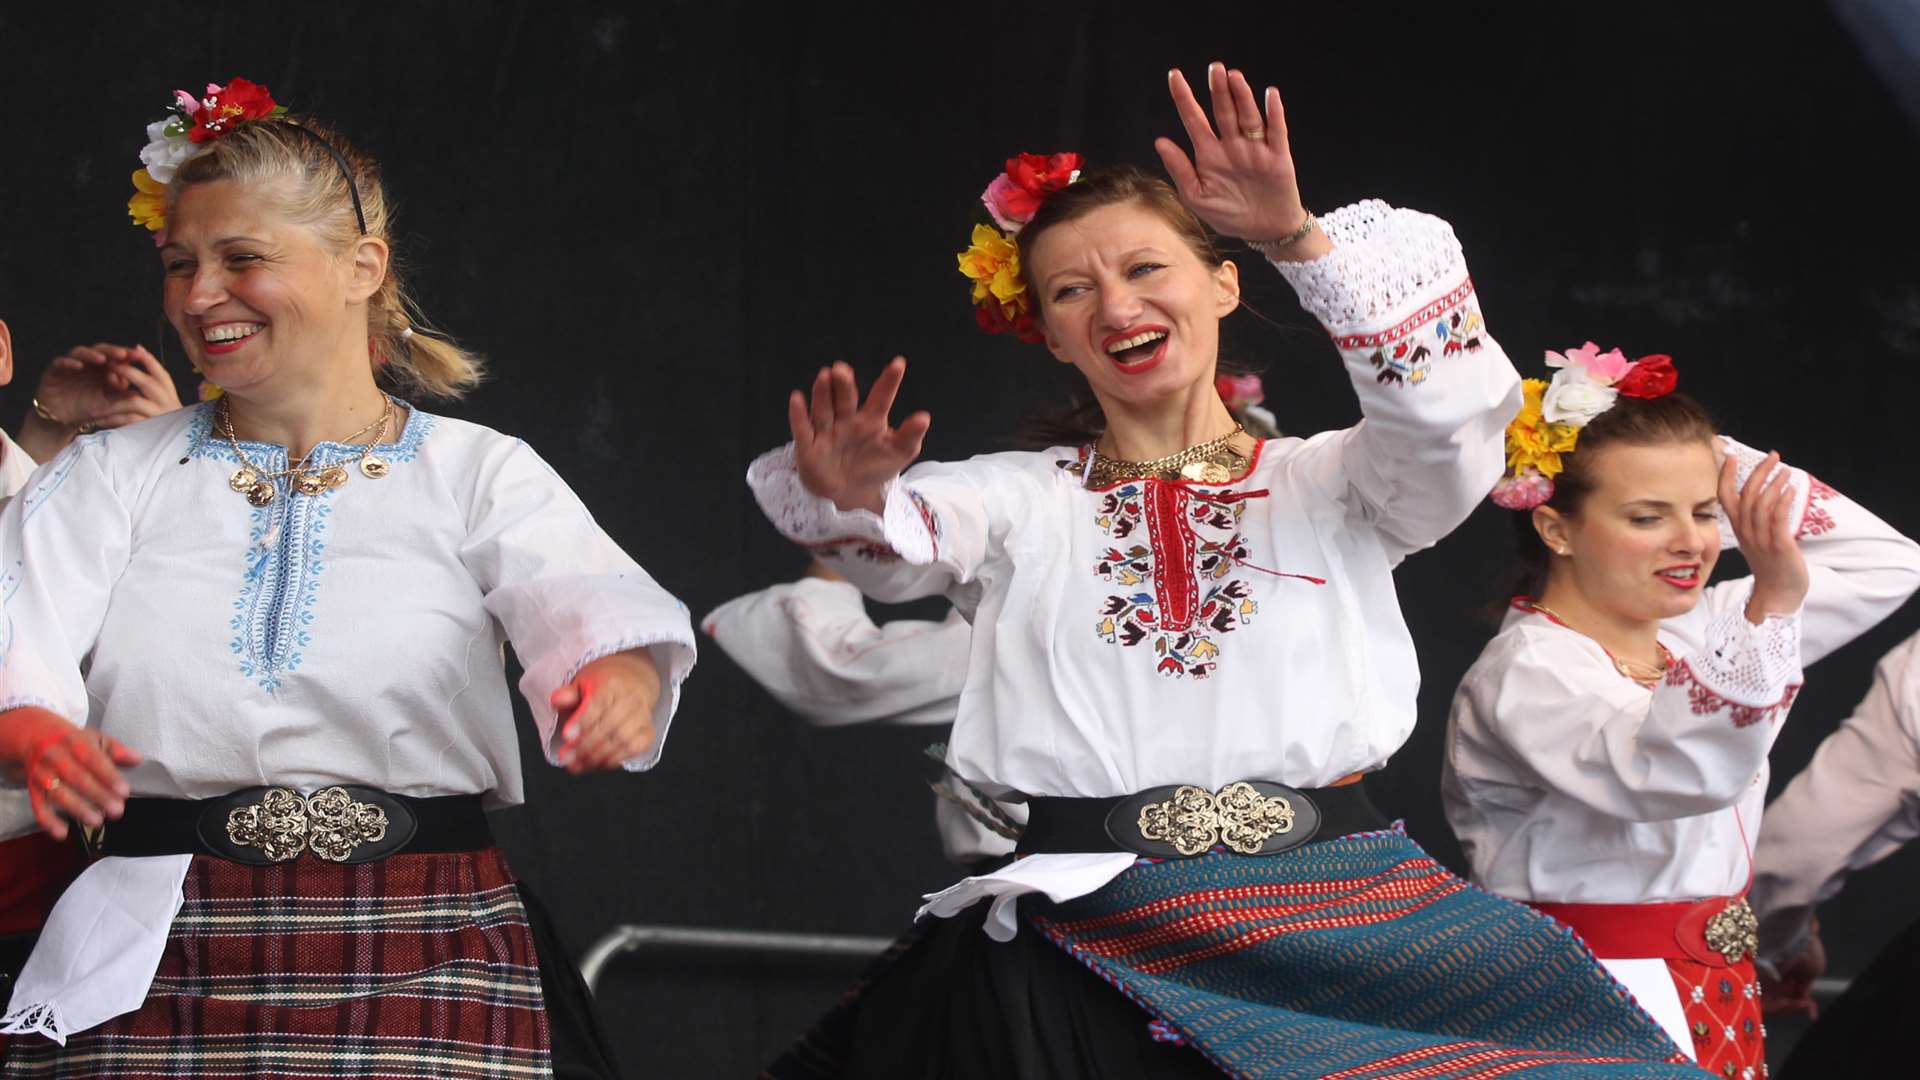 Bulgarian dance group perform at Maidstone Mela